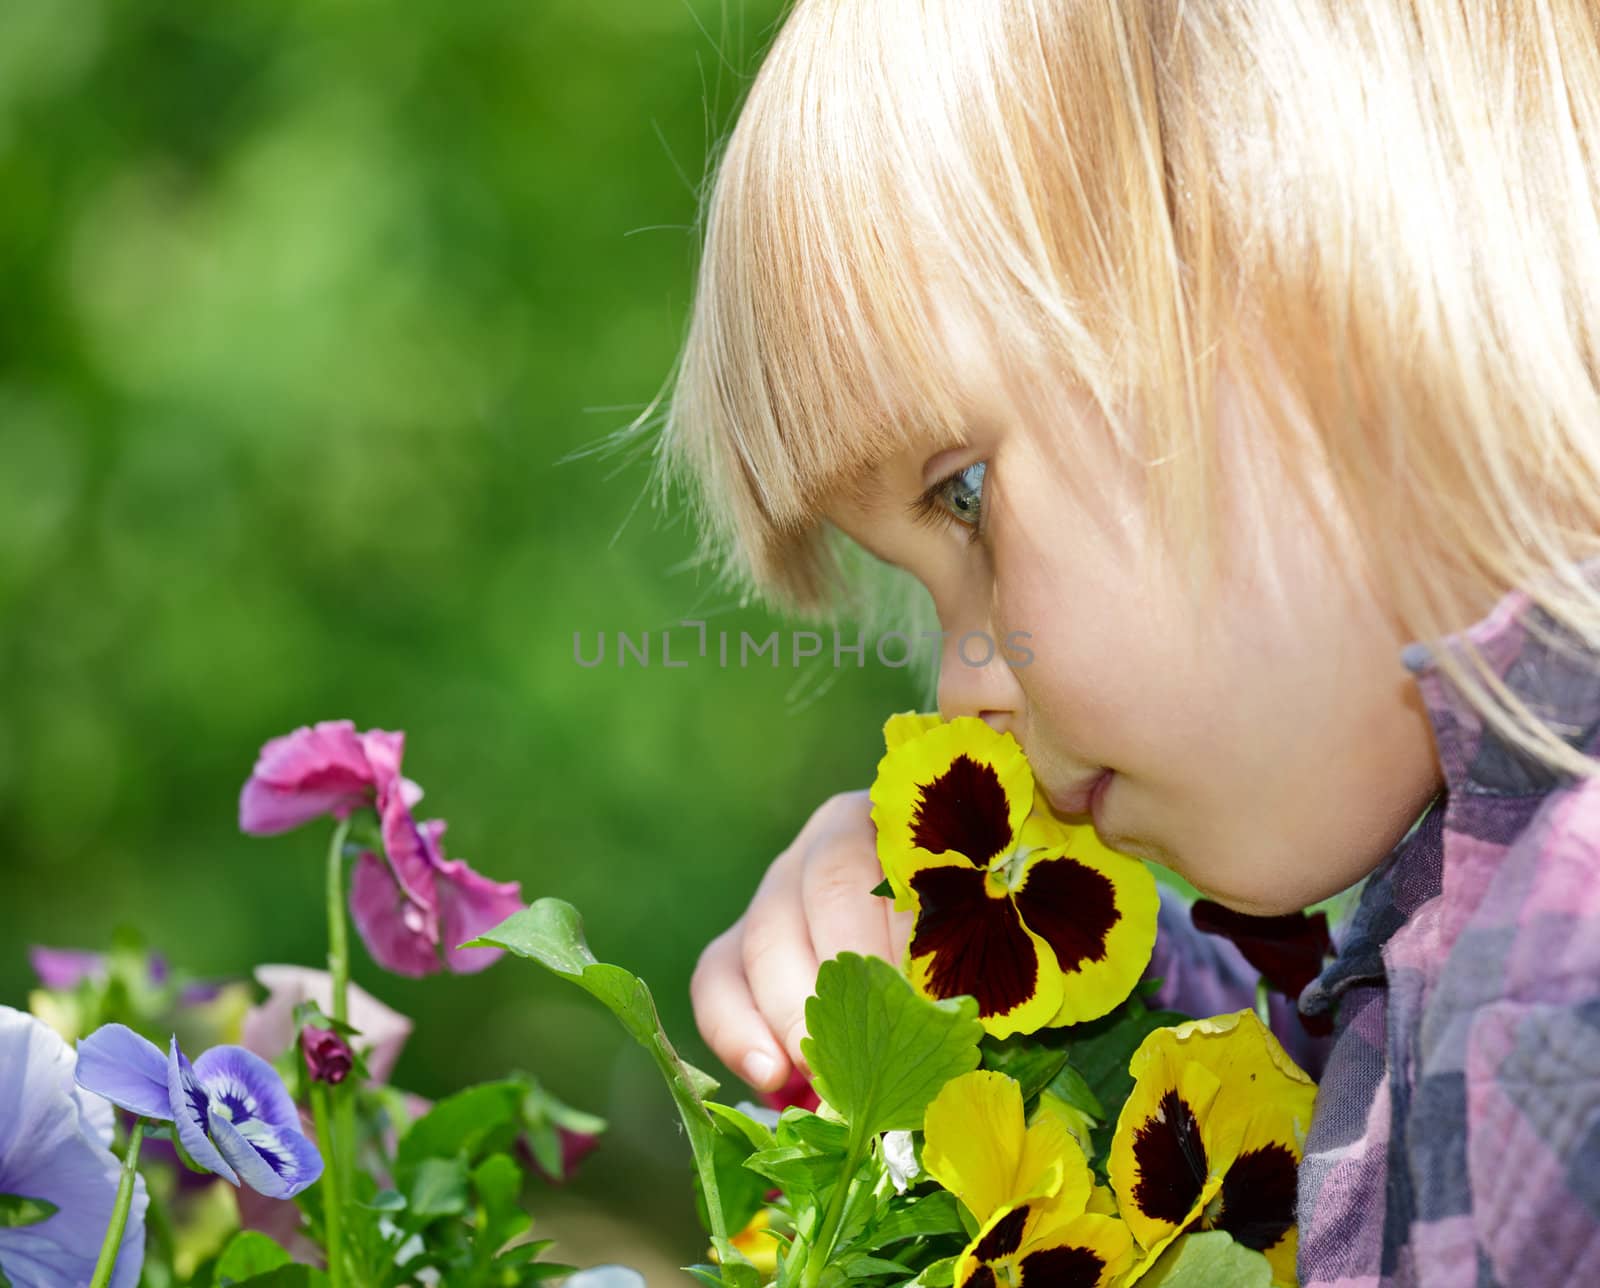 Little girl smelling flowers in a garden